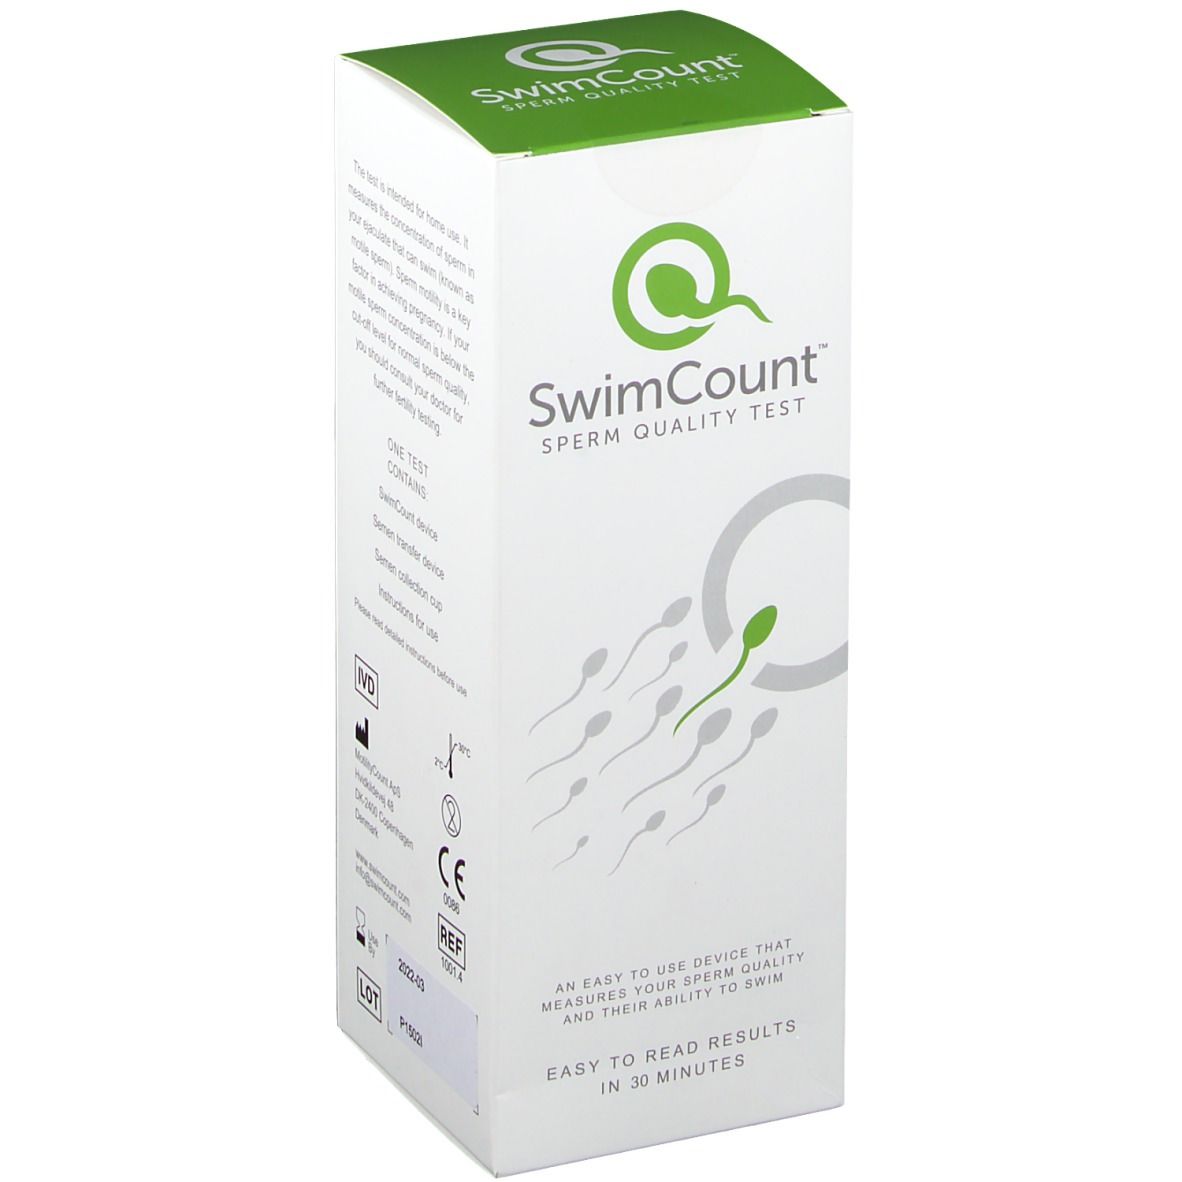 SwimCount Sperm quality test